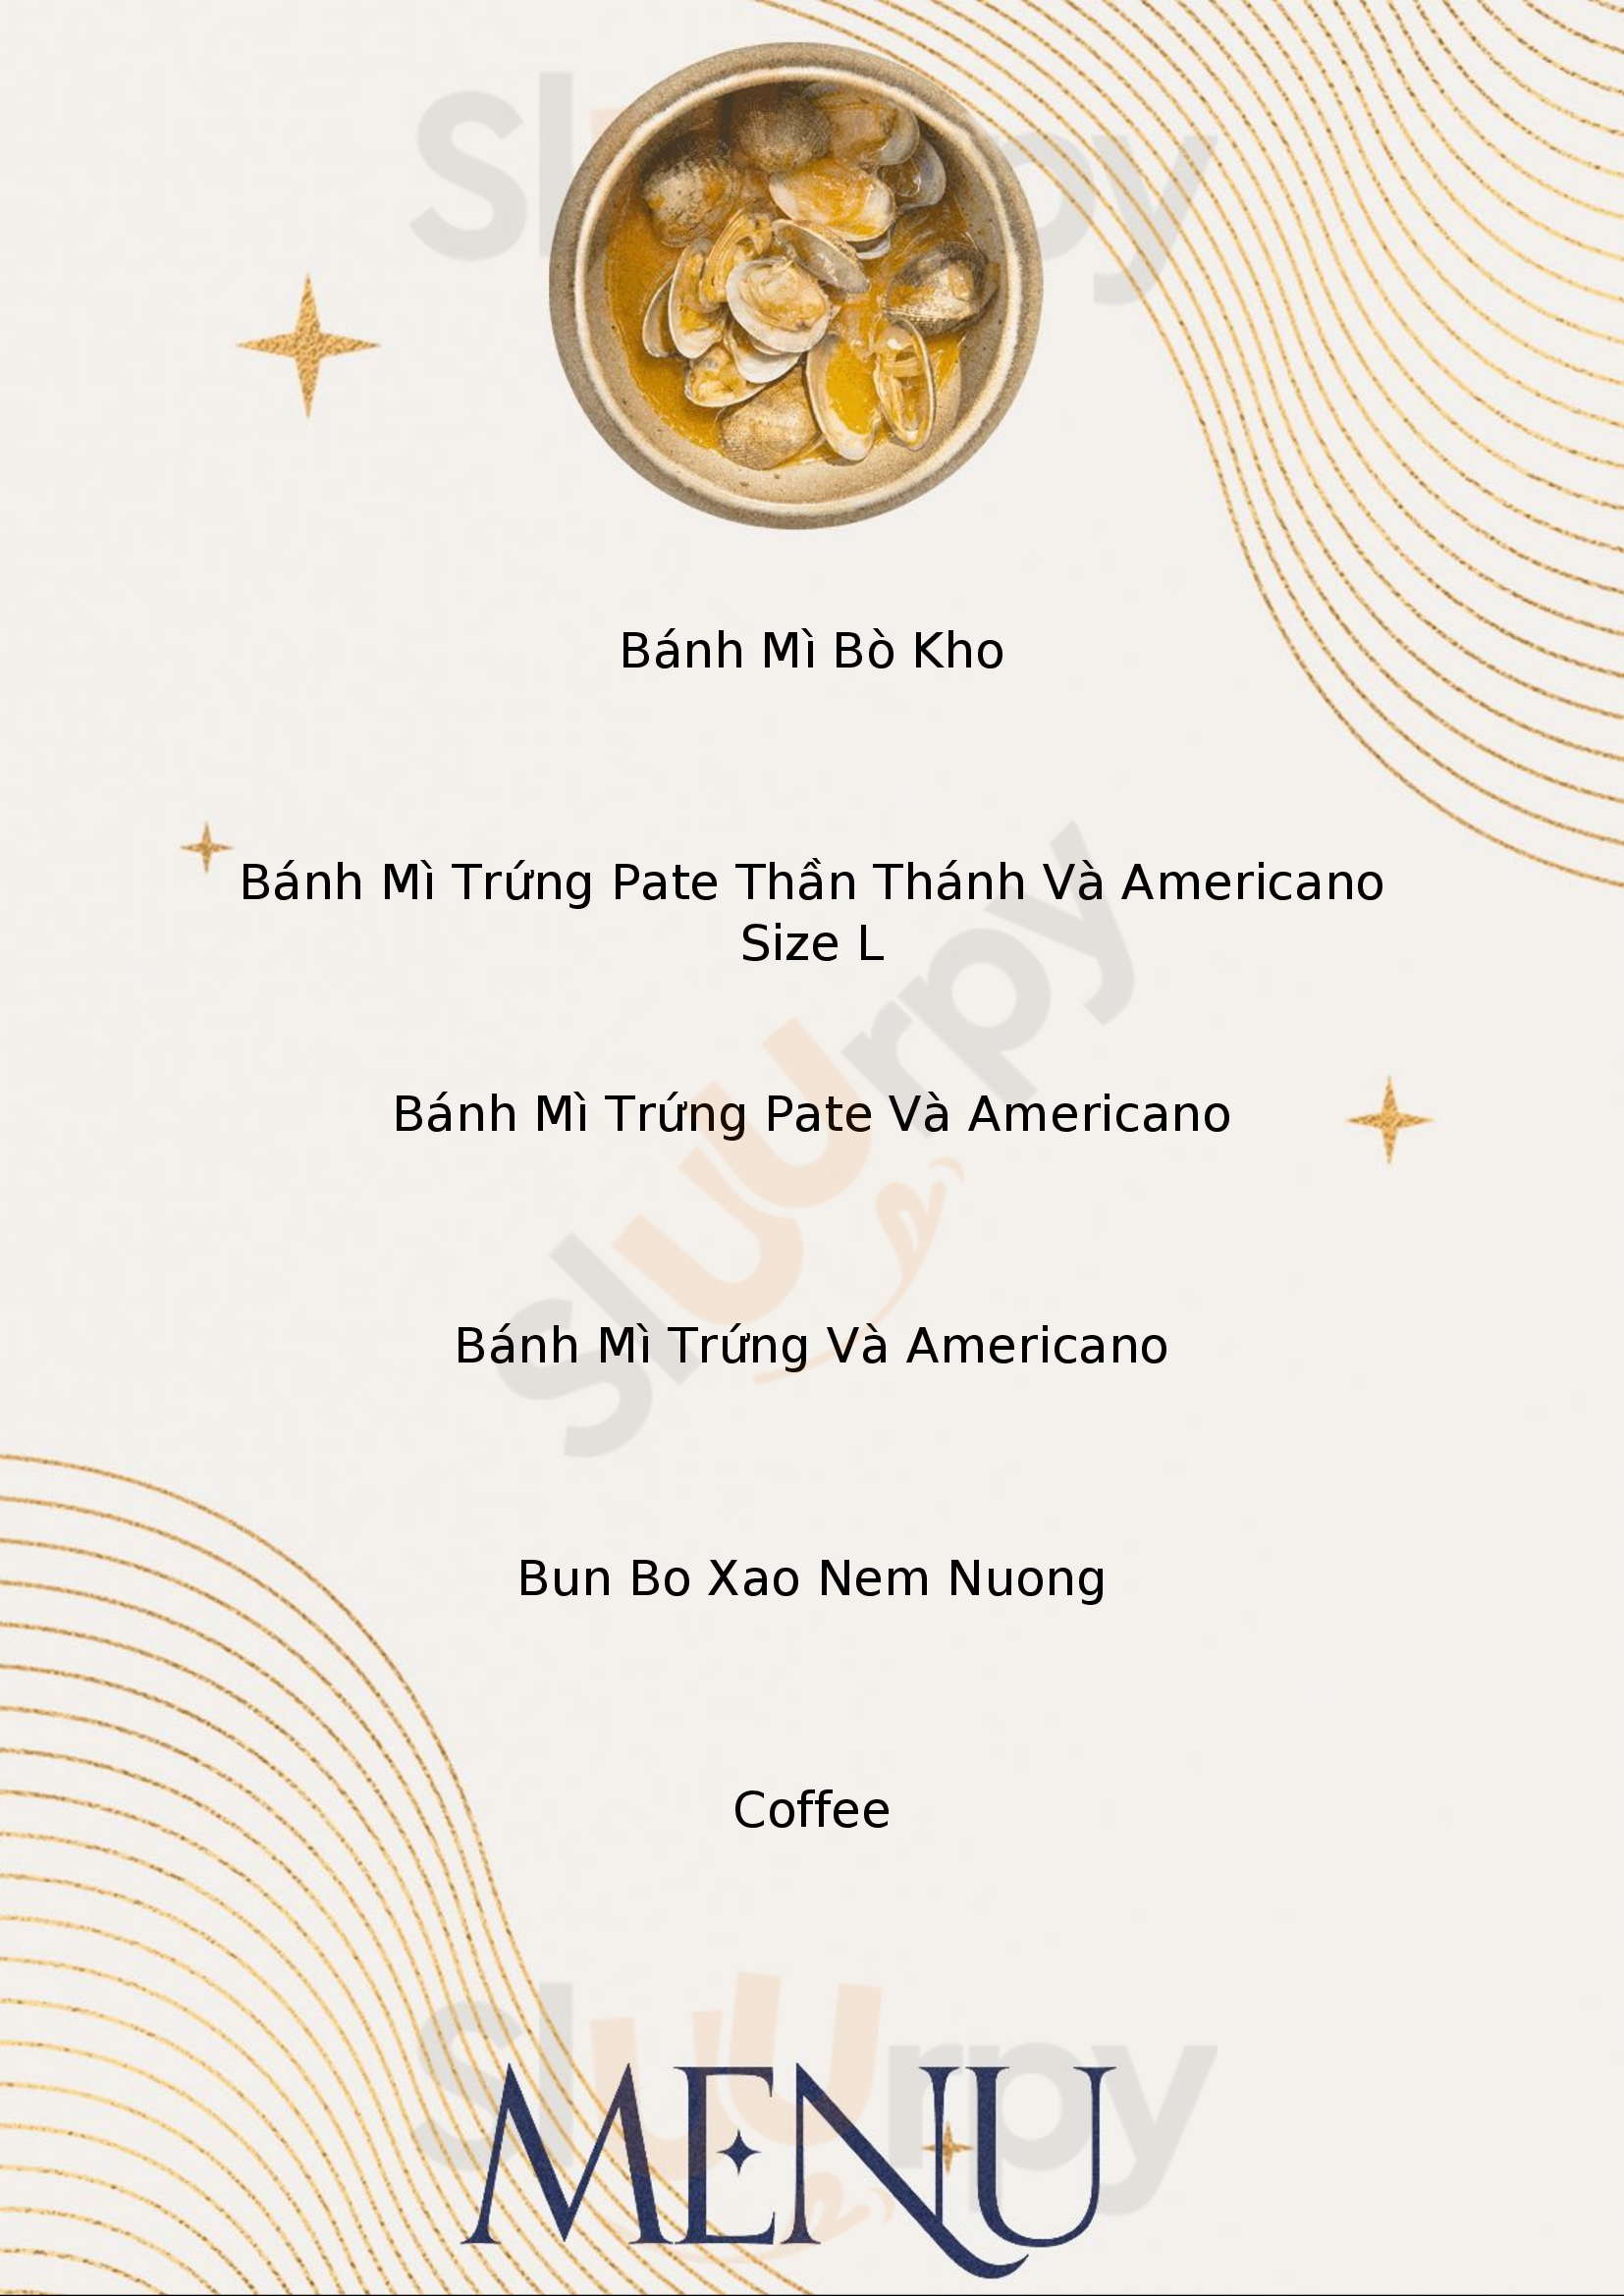 Ta Coffee & Tea Thành phố Hồ Chí Minh Menu - 1